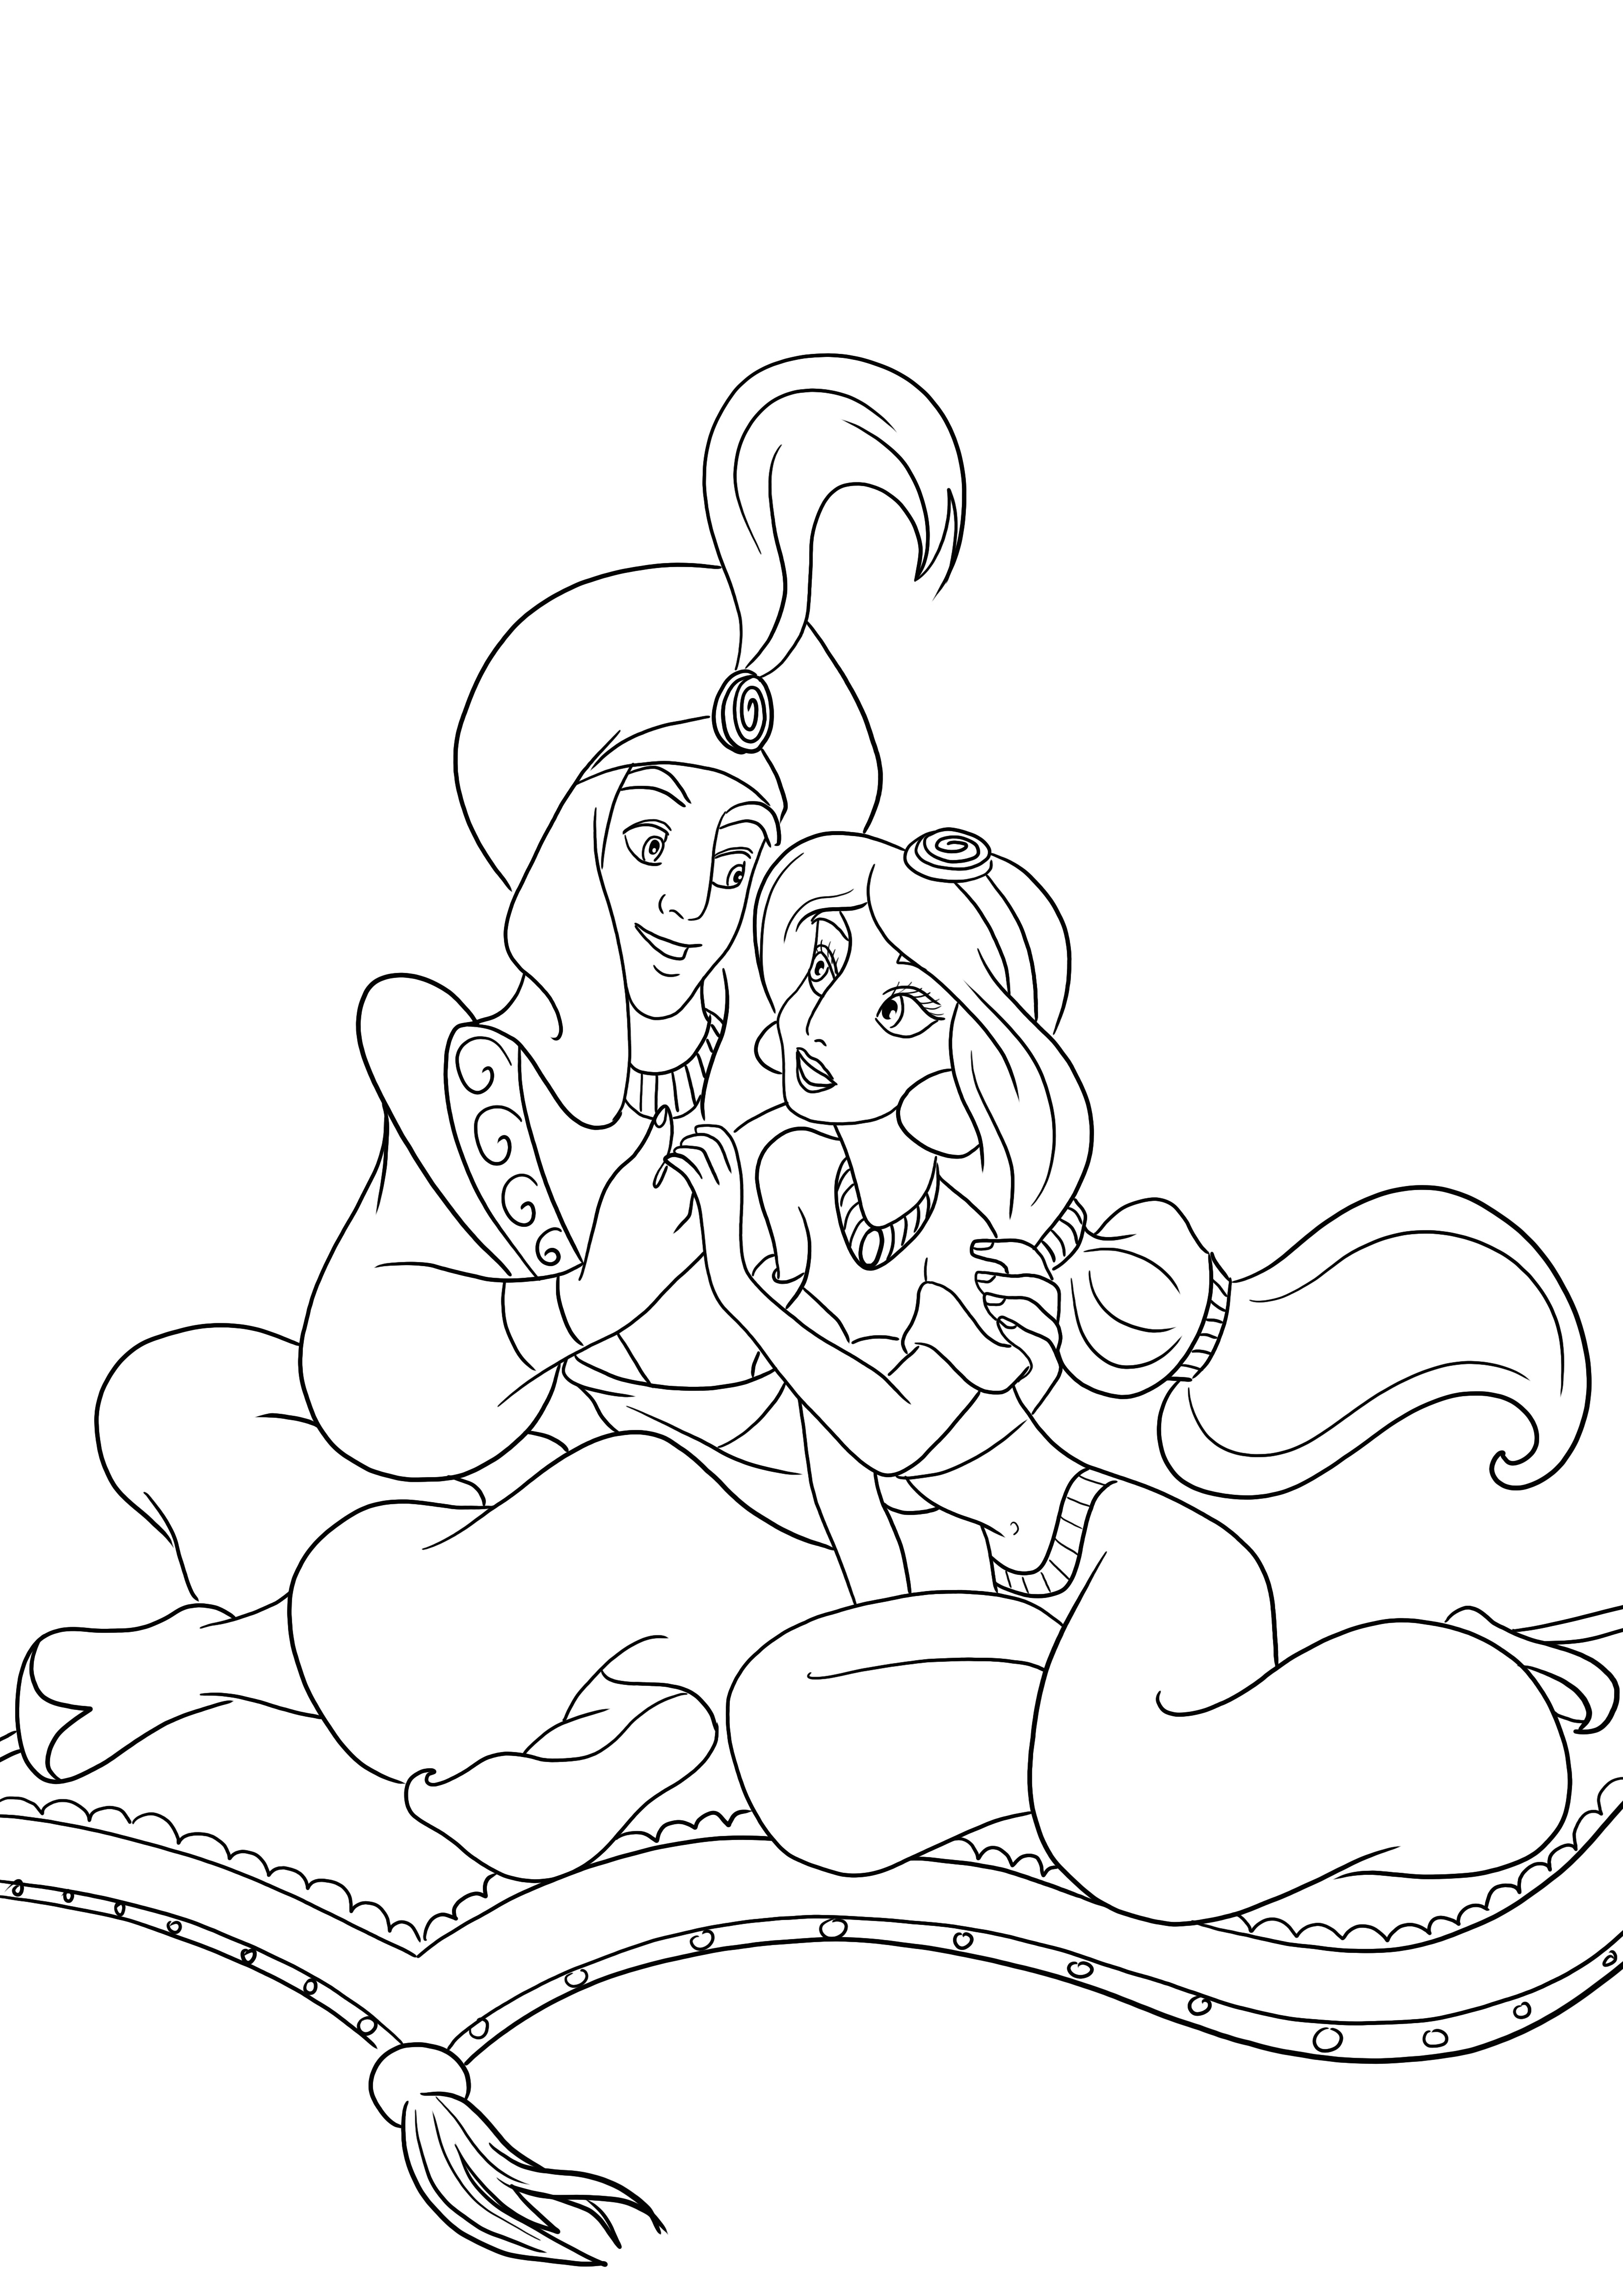 Aladdin ve Jasmine birbirlerine aşıklar ve boyamaya ve ücretsiz baskıya hazırlar.